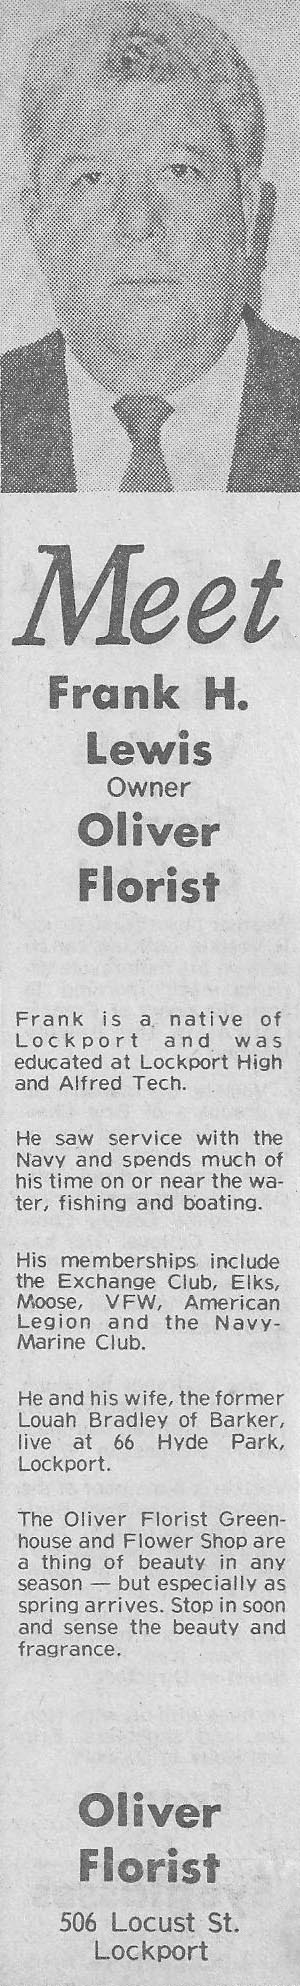 Frank Hall Lewis of Oliver Florist